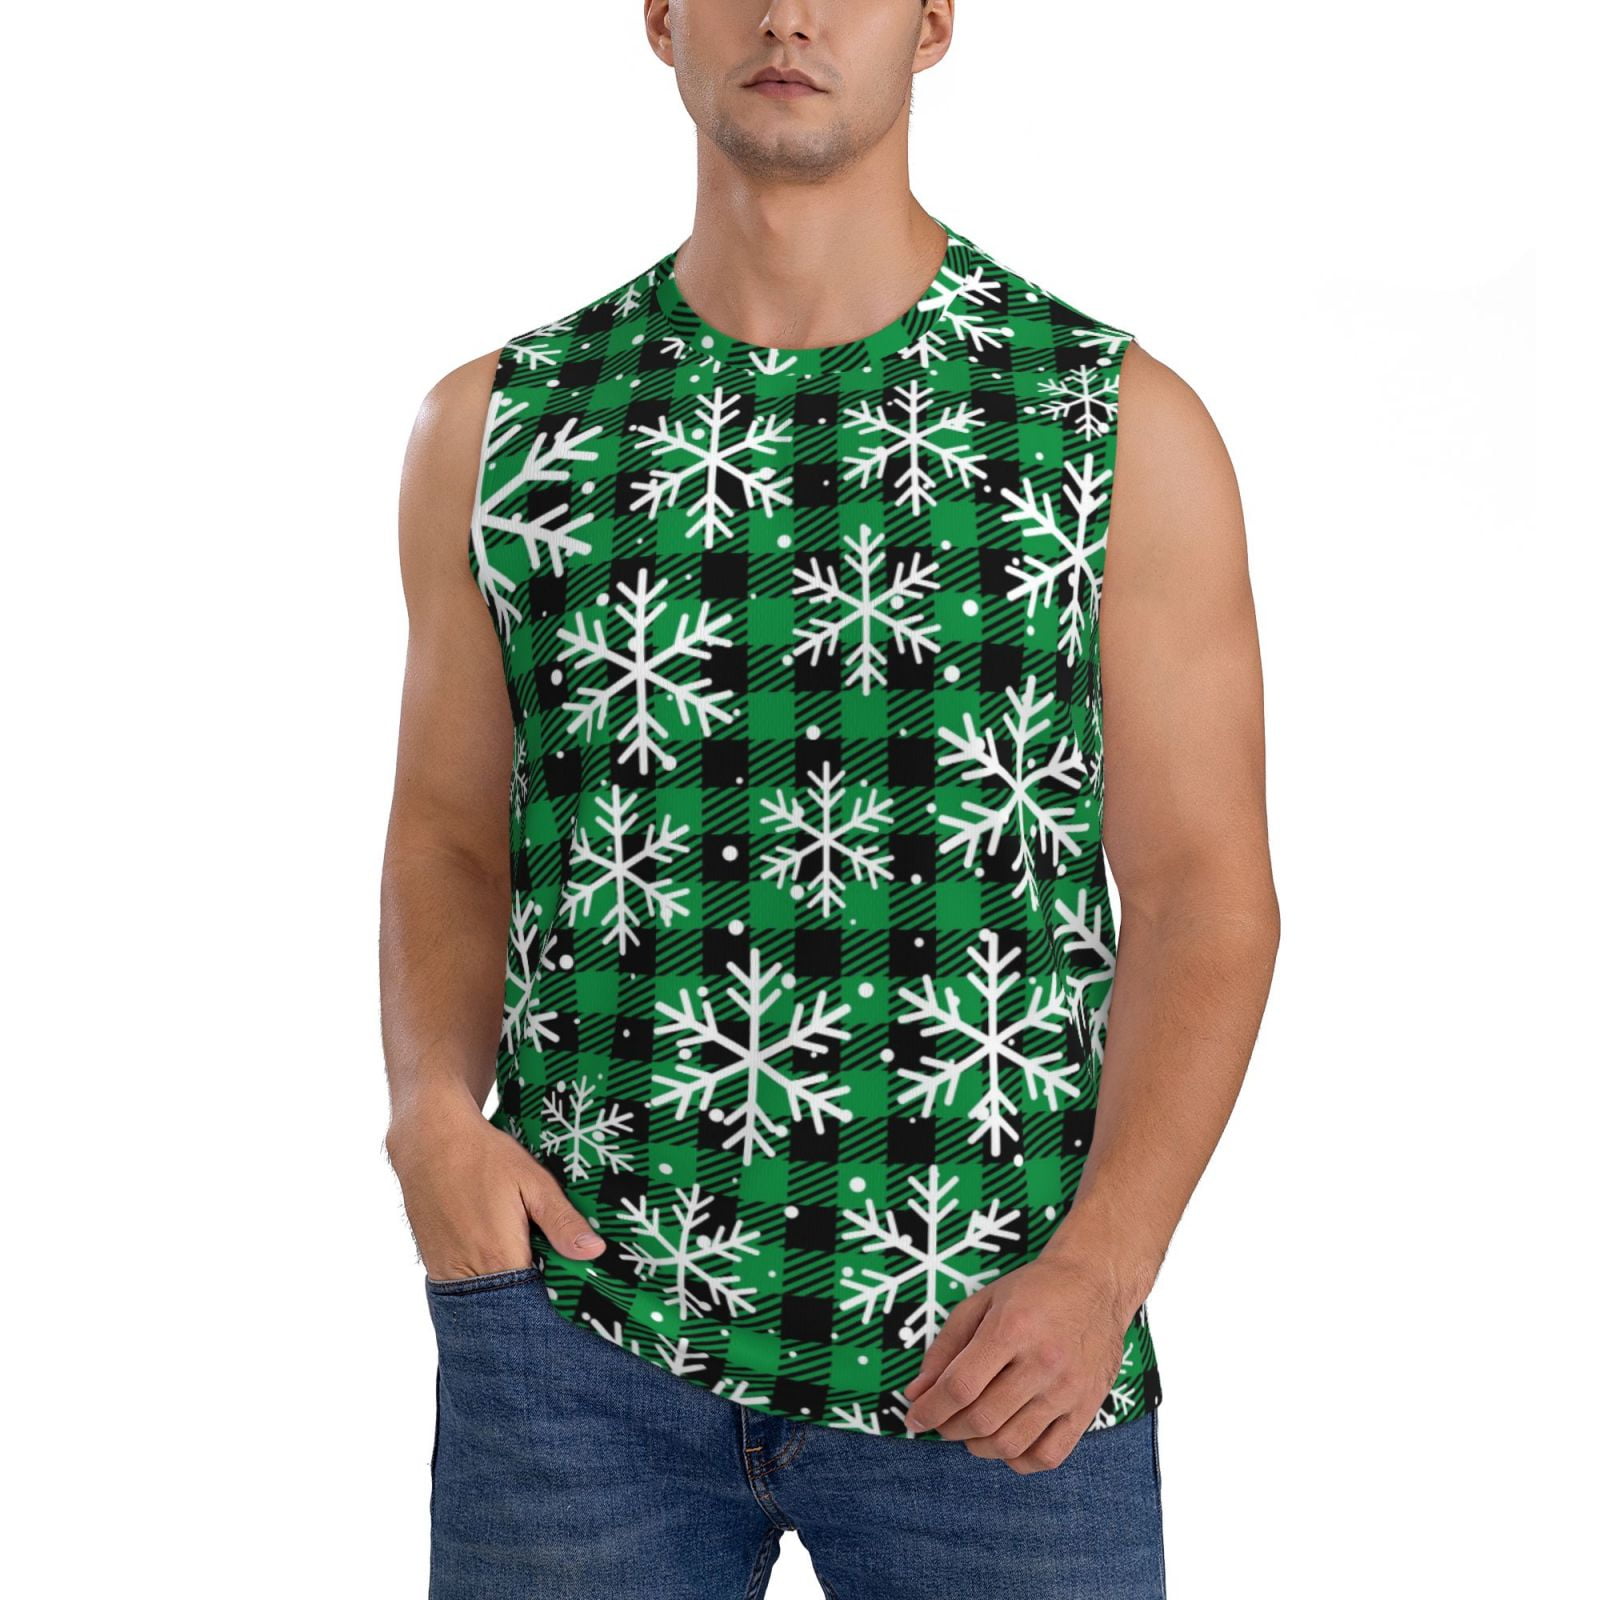 Gaeub Christmas Pattern At Buffalo Plaid Men's Sleeveless Muscle Shirts ...